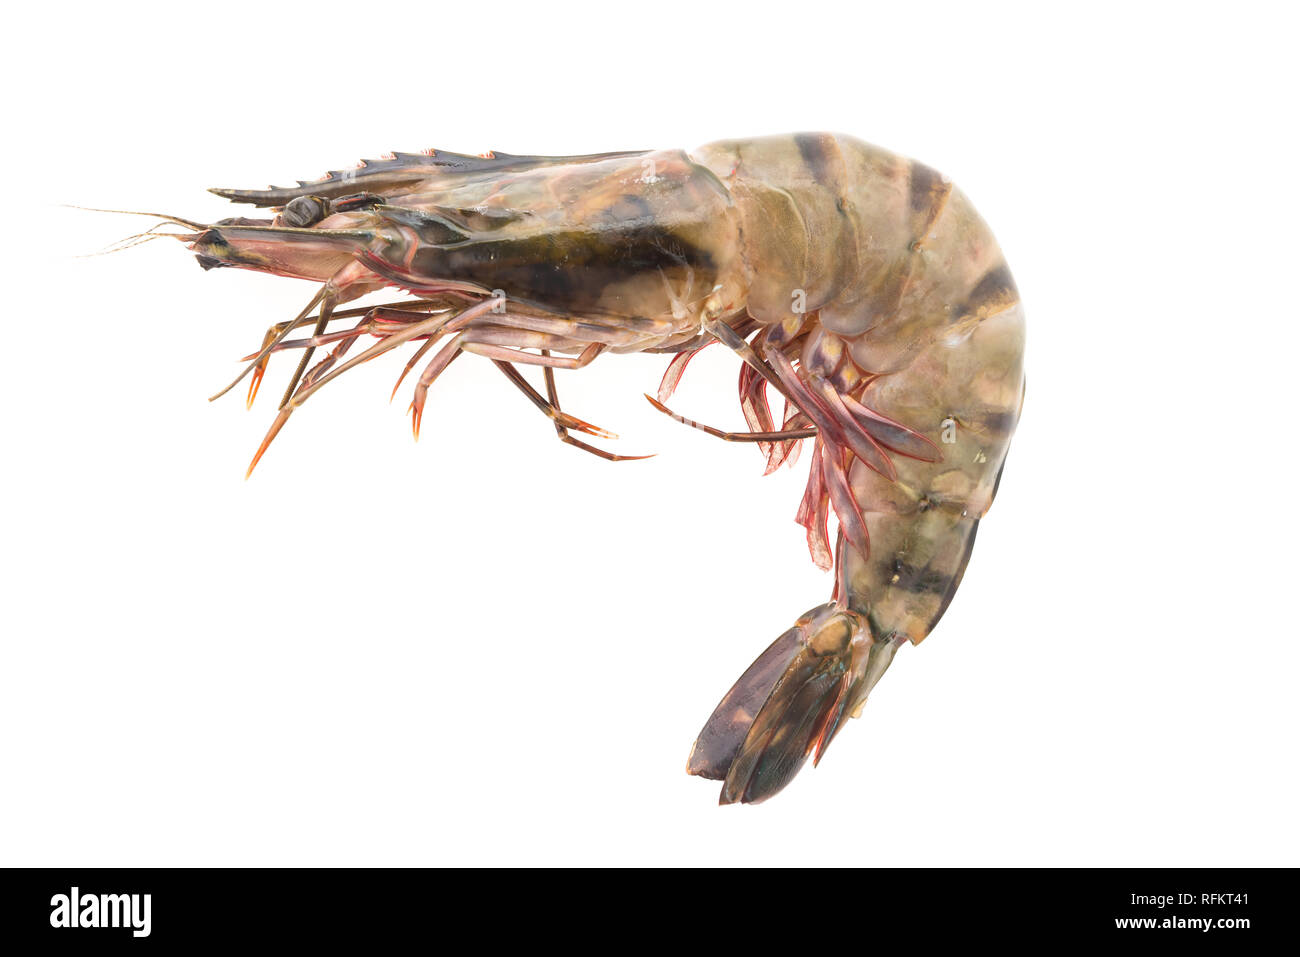 Raw Tiger prawn shrimp isolated on white background Stock Photo